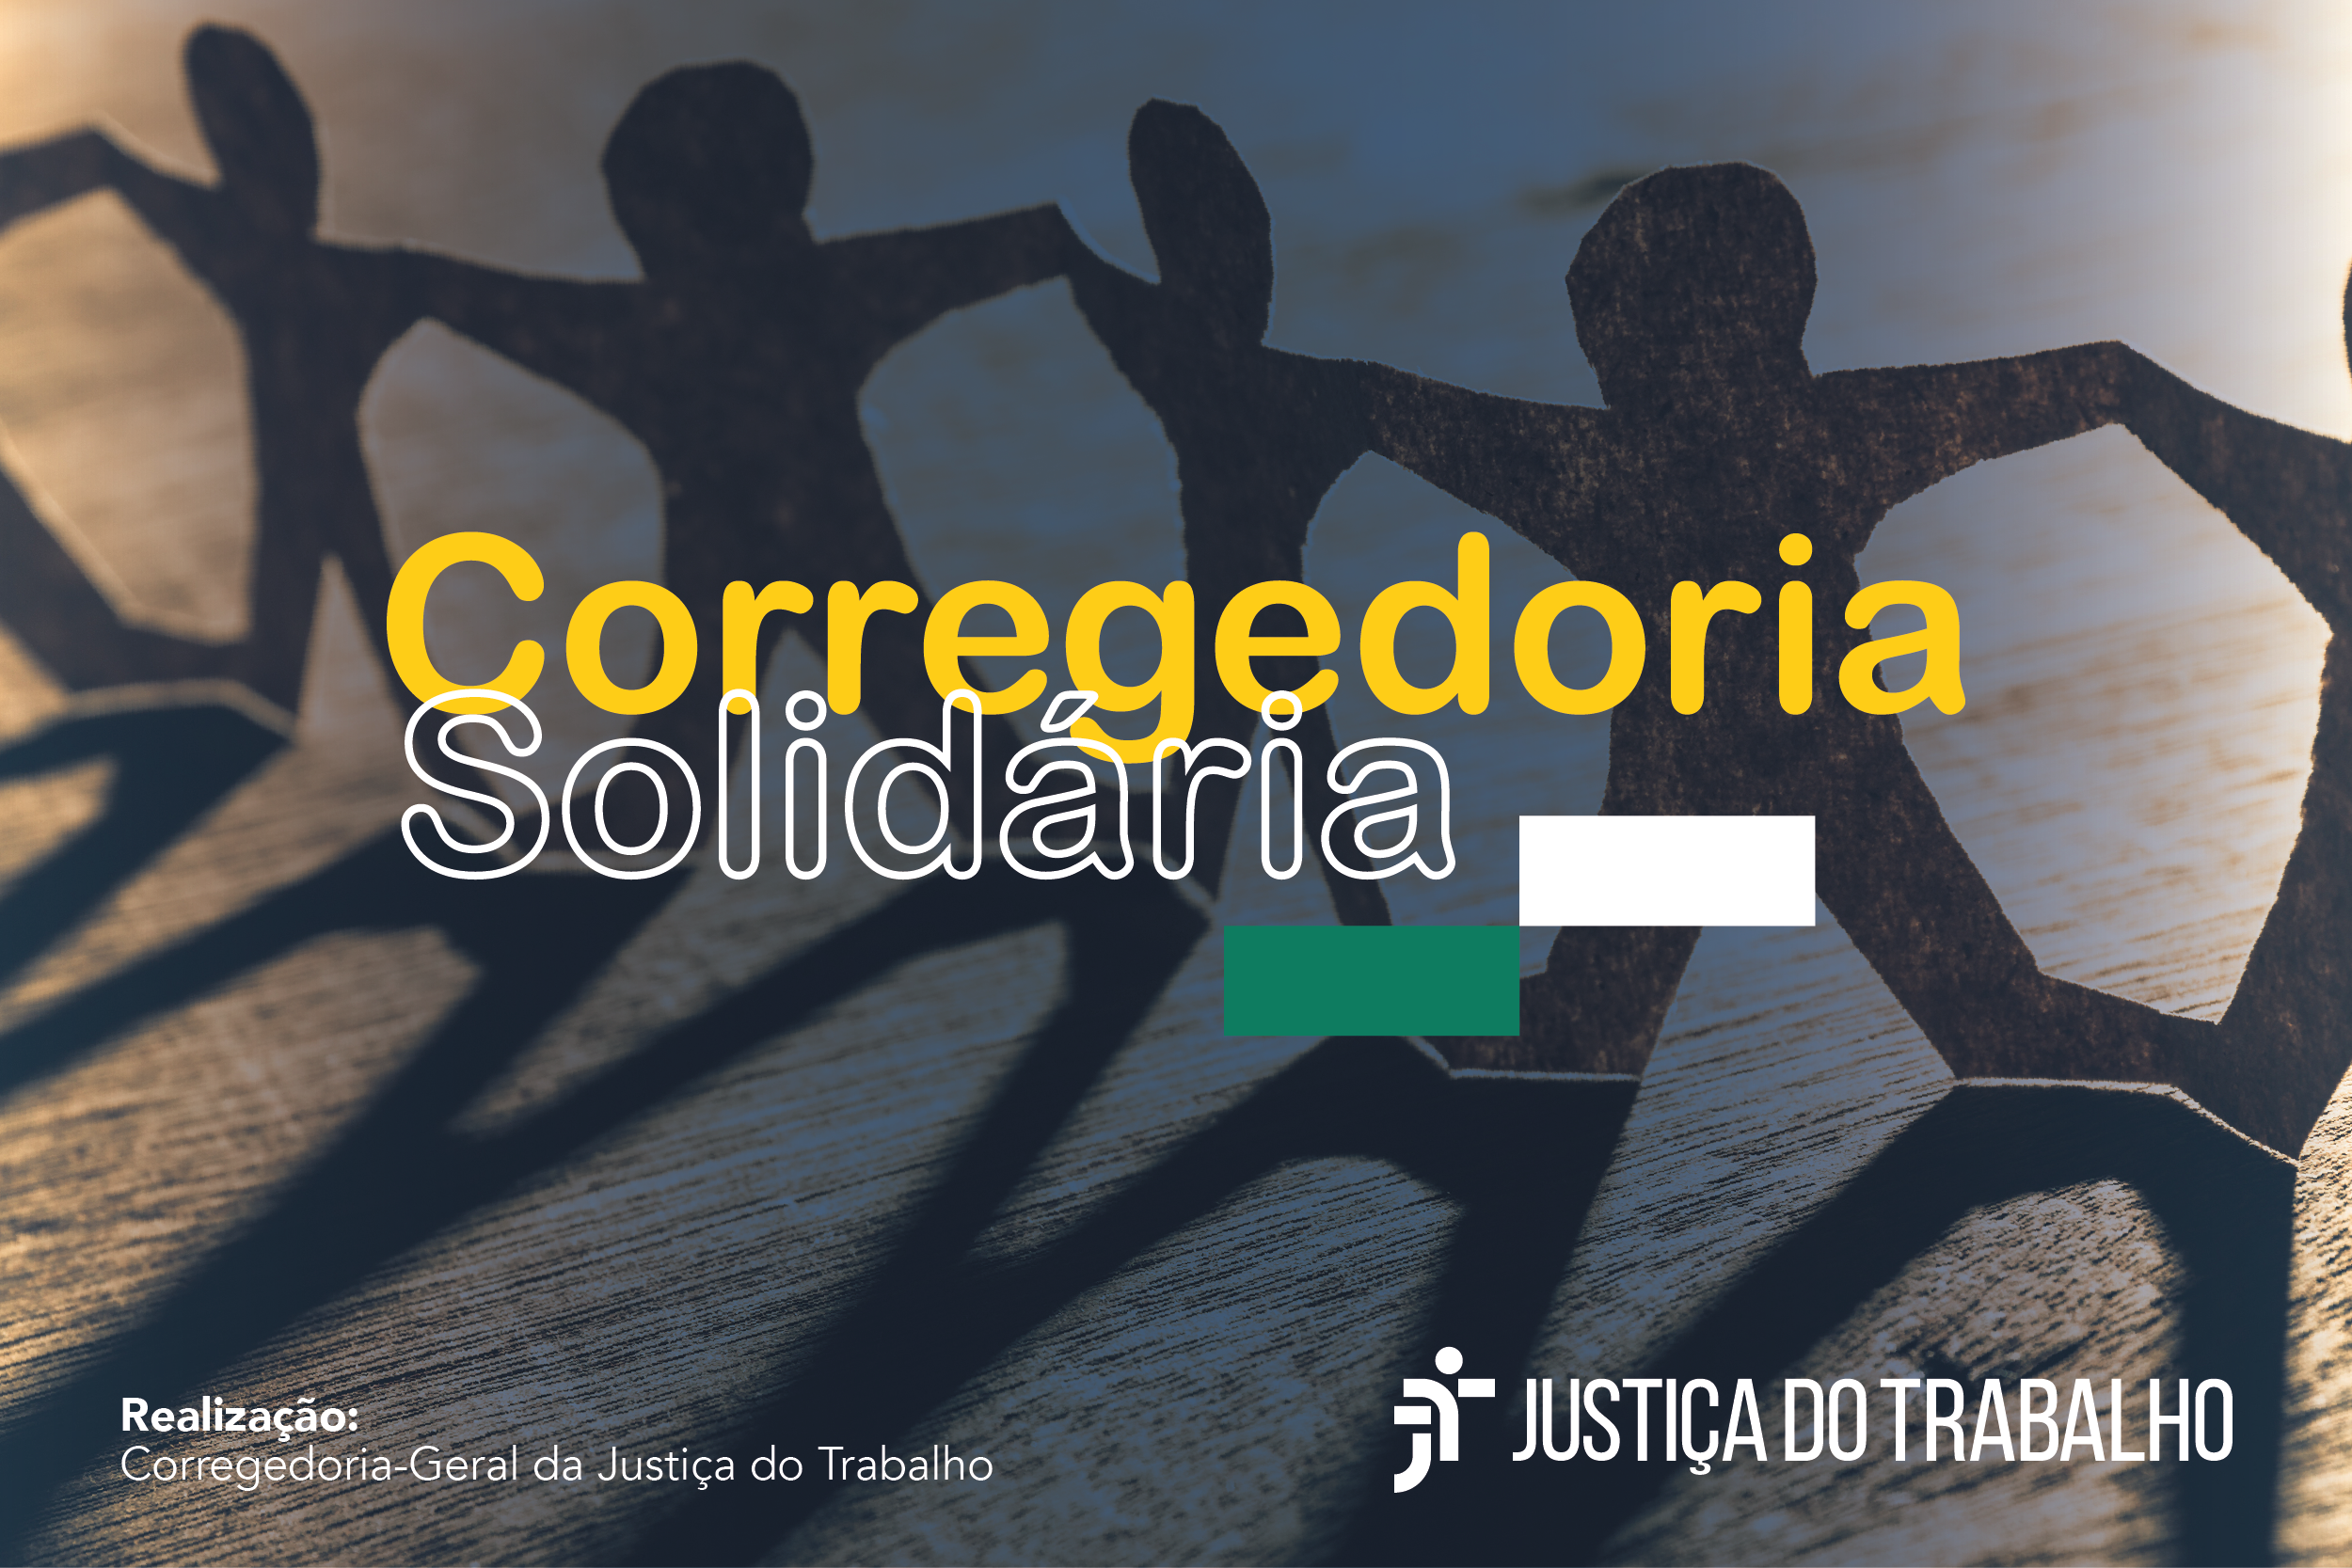 Arte de divulgação da Corregedoria Solidaria.